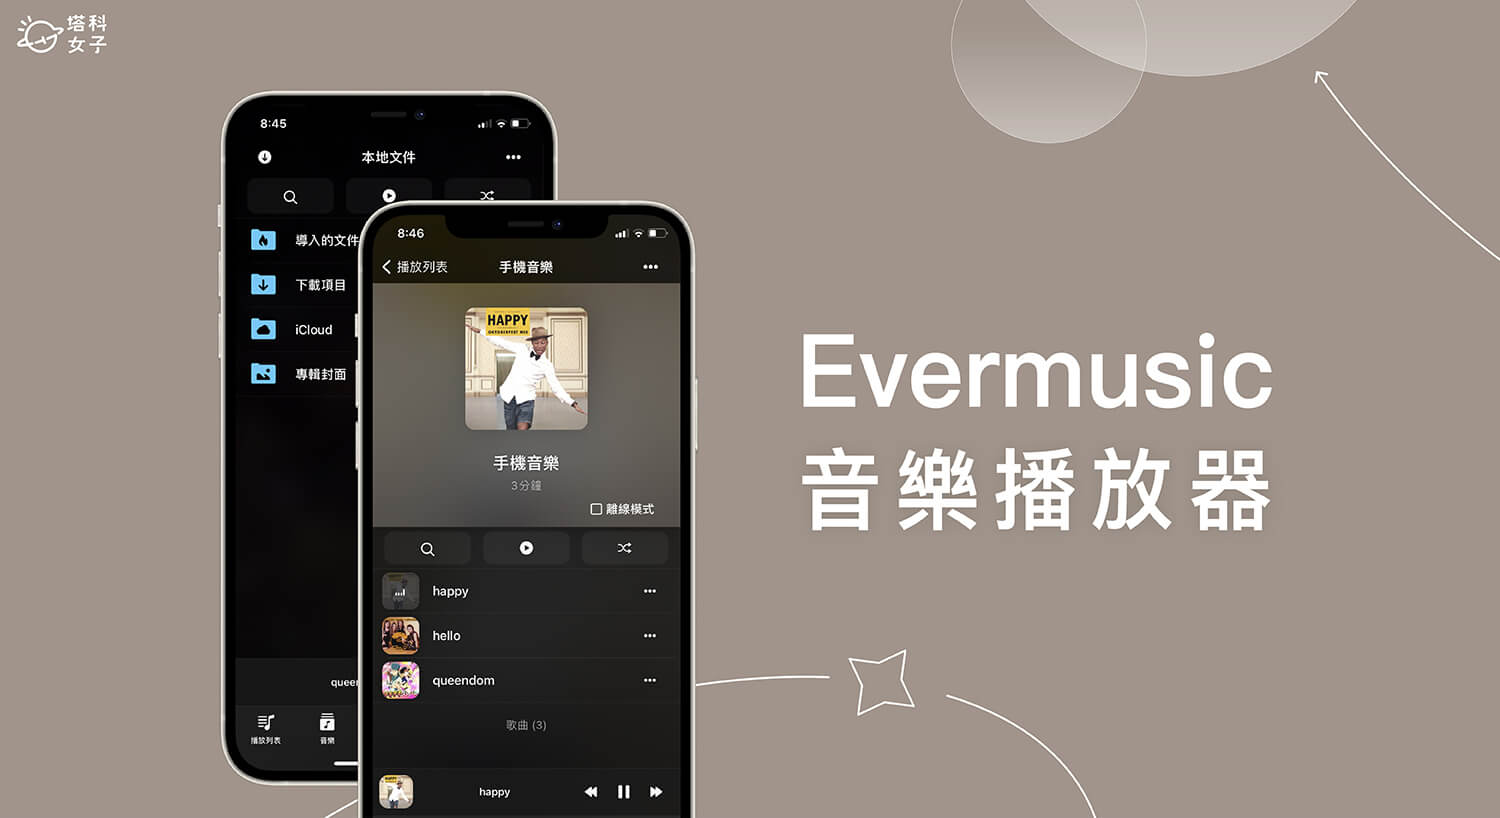 MP3 音樂播放器 App 《Evermusic》支援匯入 iPhone 手機音樂檔案